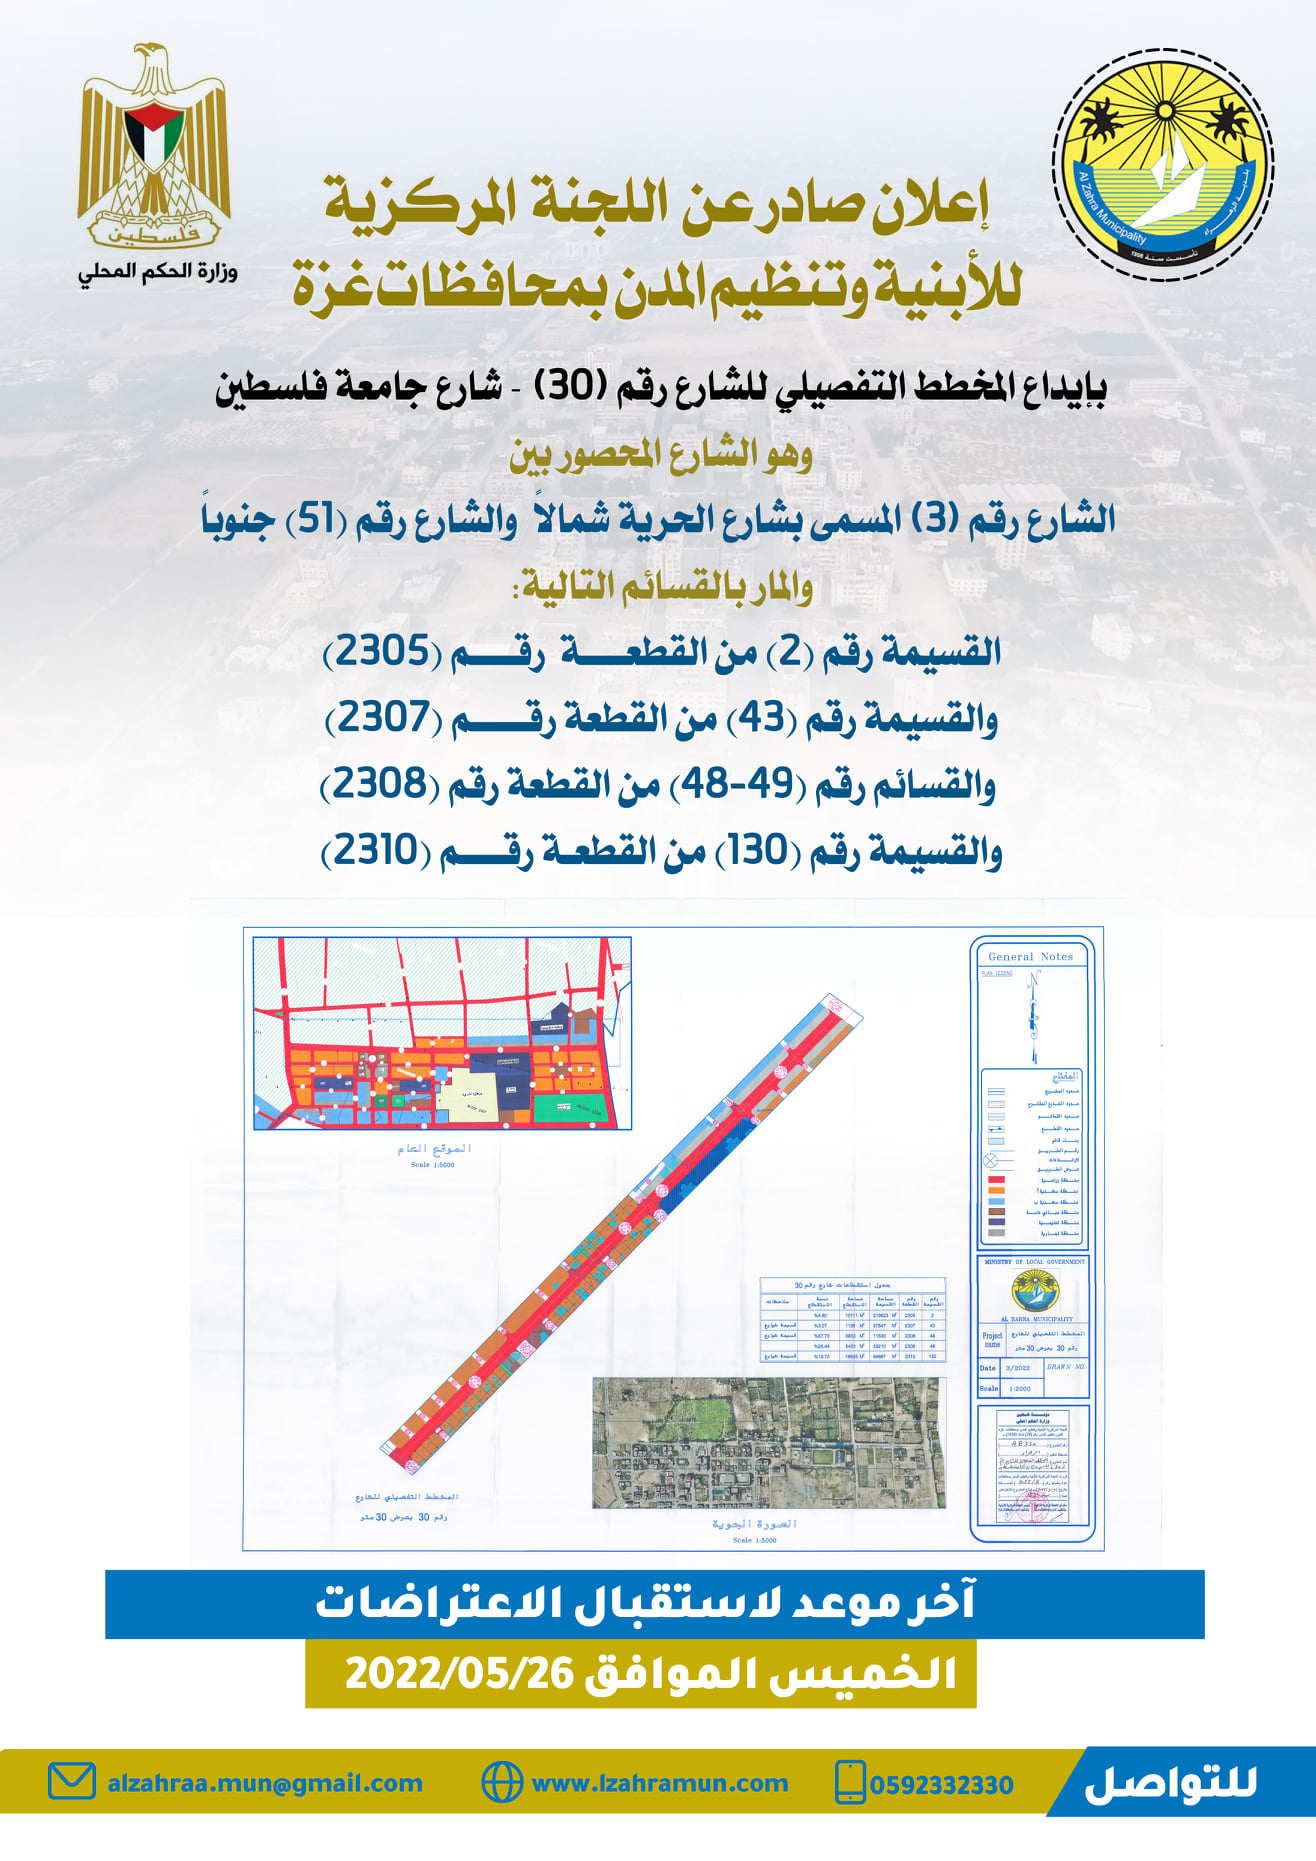 إعلان صادر عن اللجنة المركزية للأبنية وتنظيم المدن إيداع المخطط التفصيلي للشارع رقم 30 - شارع جامعة فلسطين